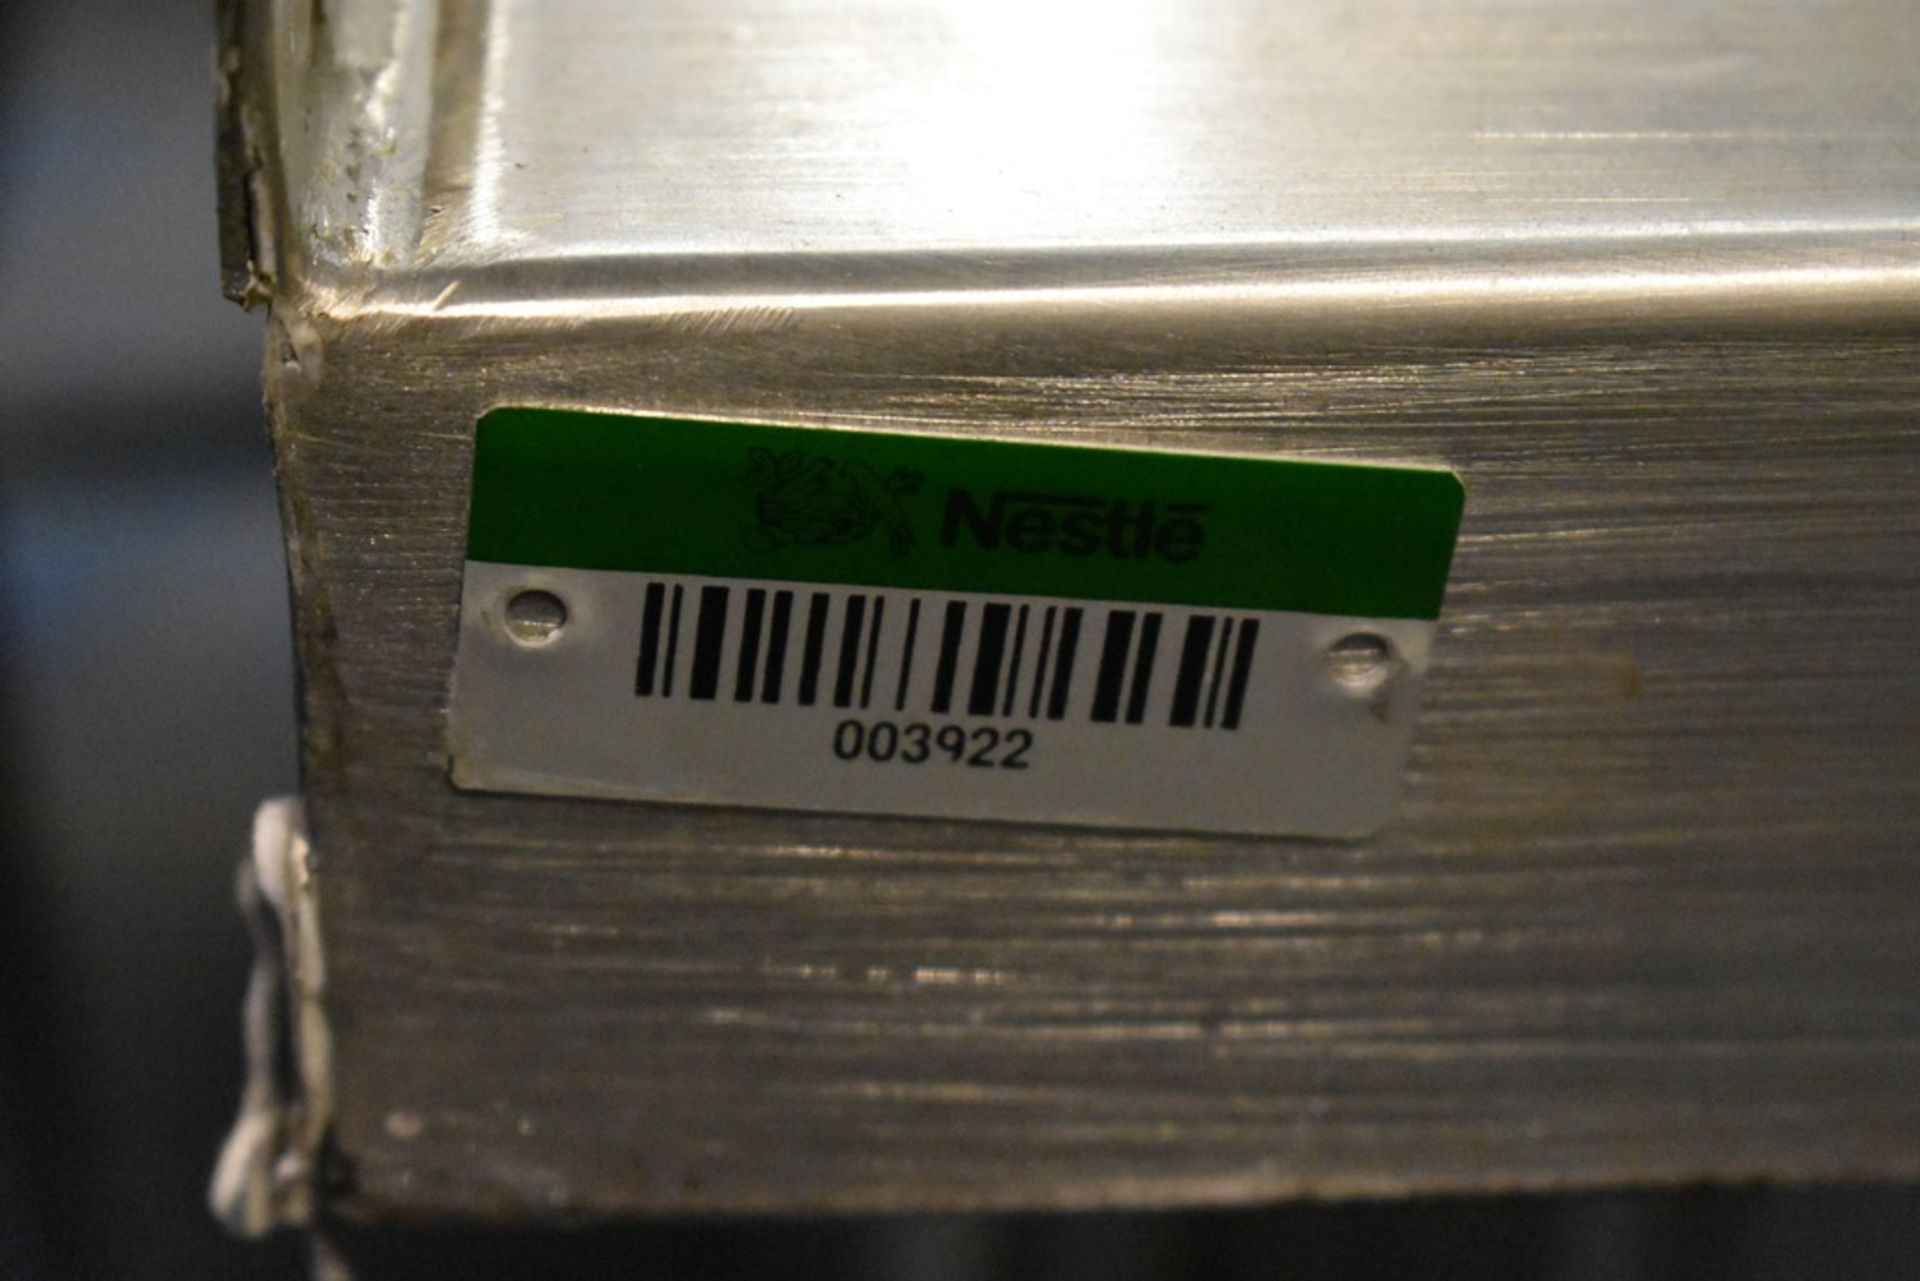 Tarja triple en acero inoxidable con una llave mezcladora, medidas: 140 x 60 x 90 cm - Image 13 of 13